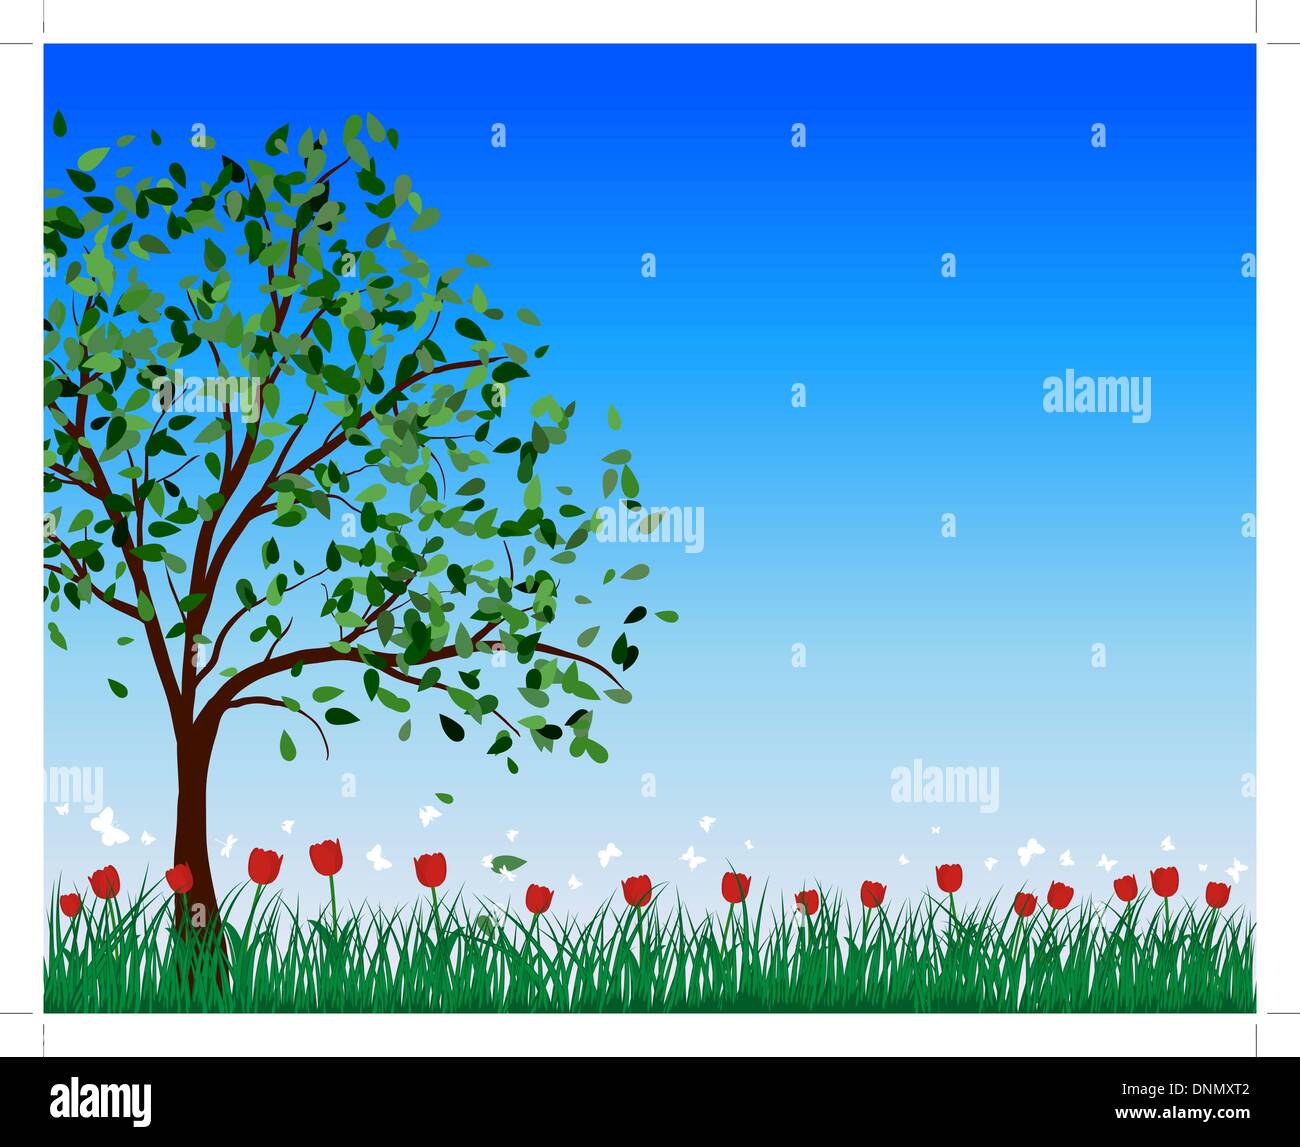 Summer meadow background avec des tulipes. Illustration vecteur EPS 10. Illustration de Vecteur